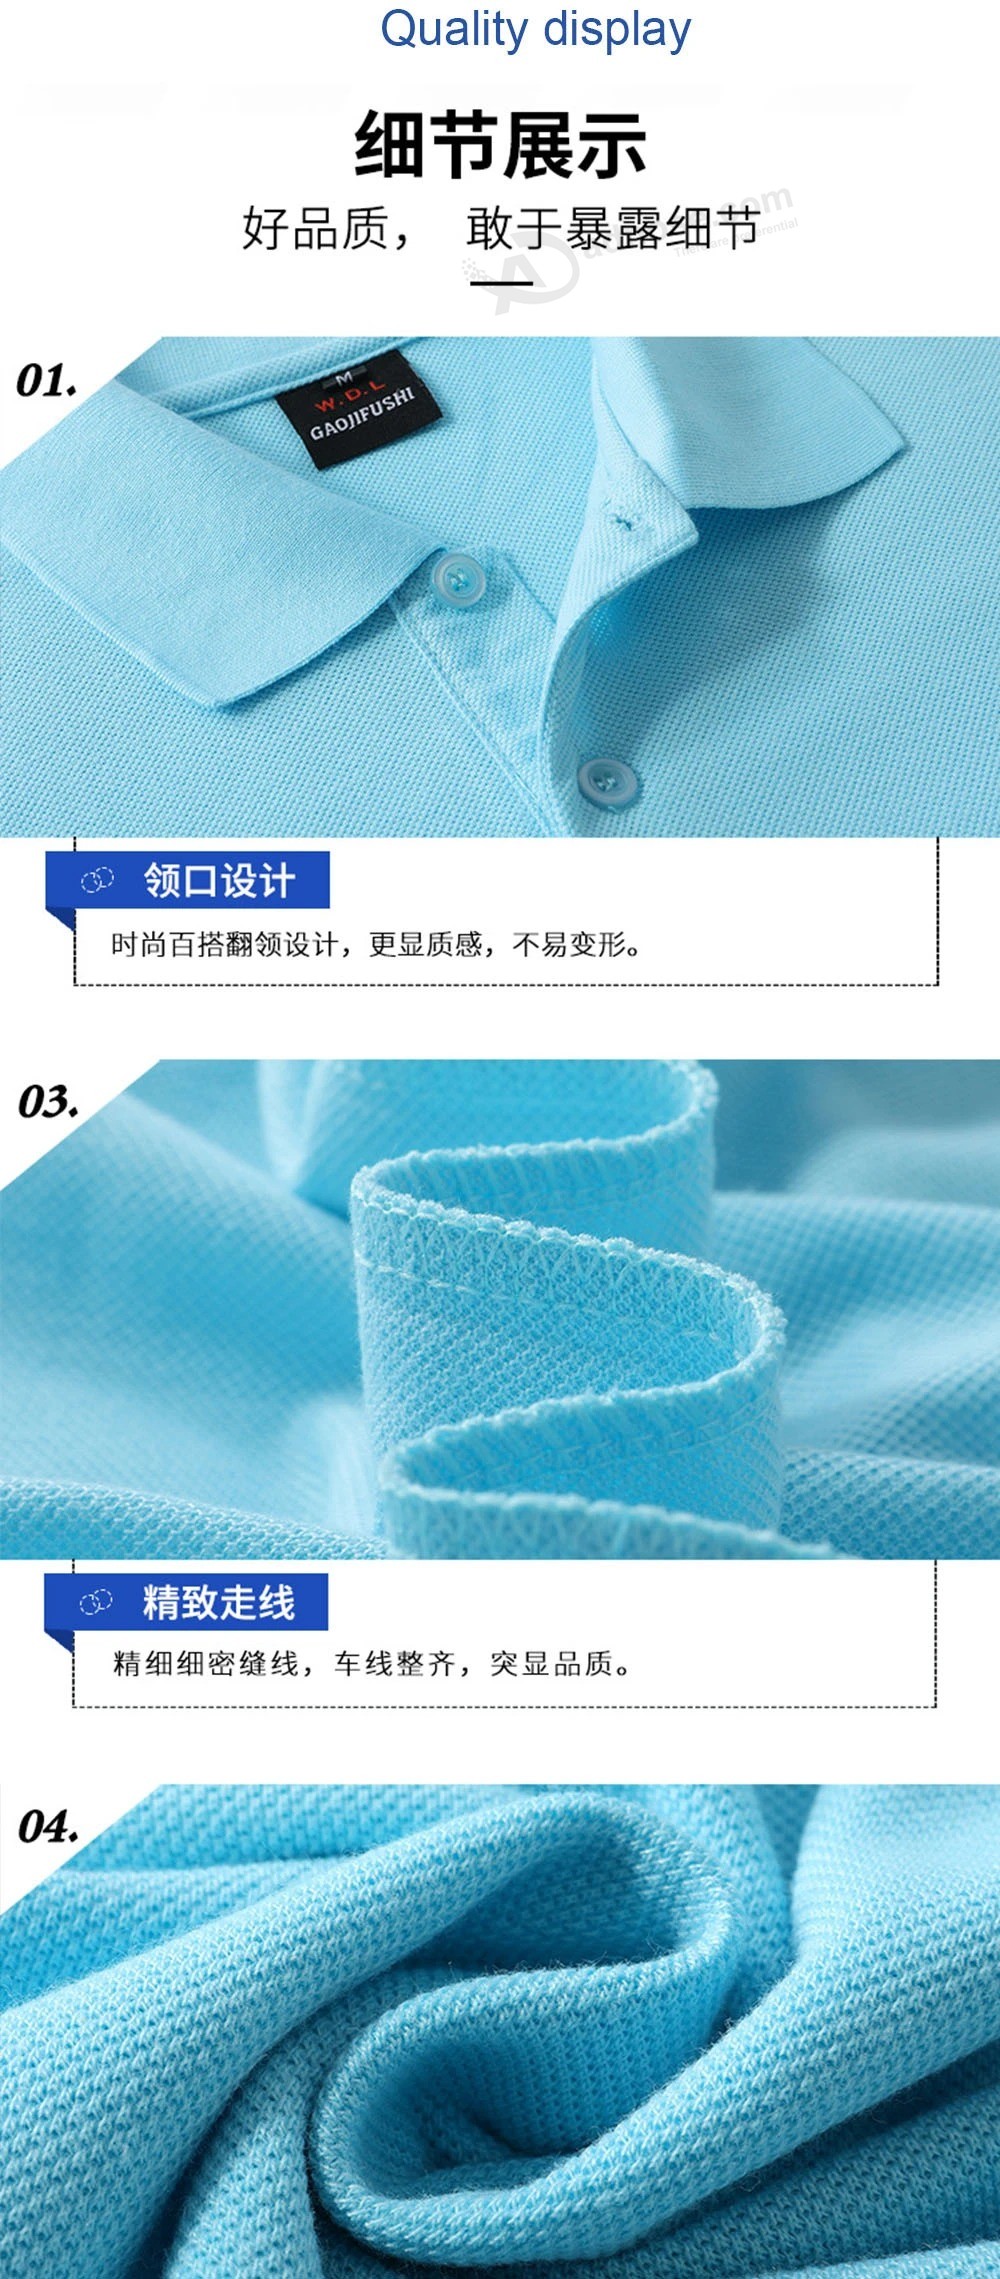 Camisa Polo personalizada de color sólido Camiseta de algodón Ropa de trabajo Manga corta Bordado personalizado Camisa publicitaria Logotipo impreso DIY